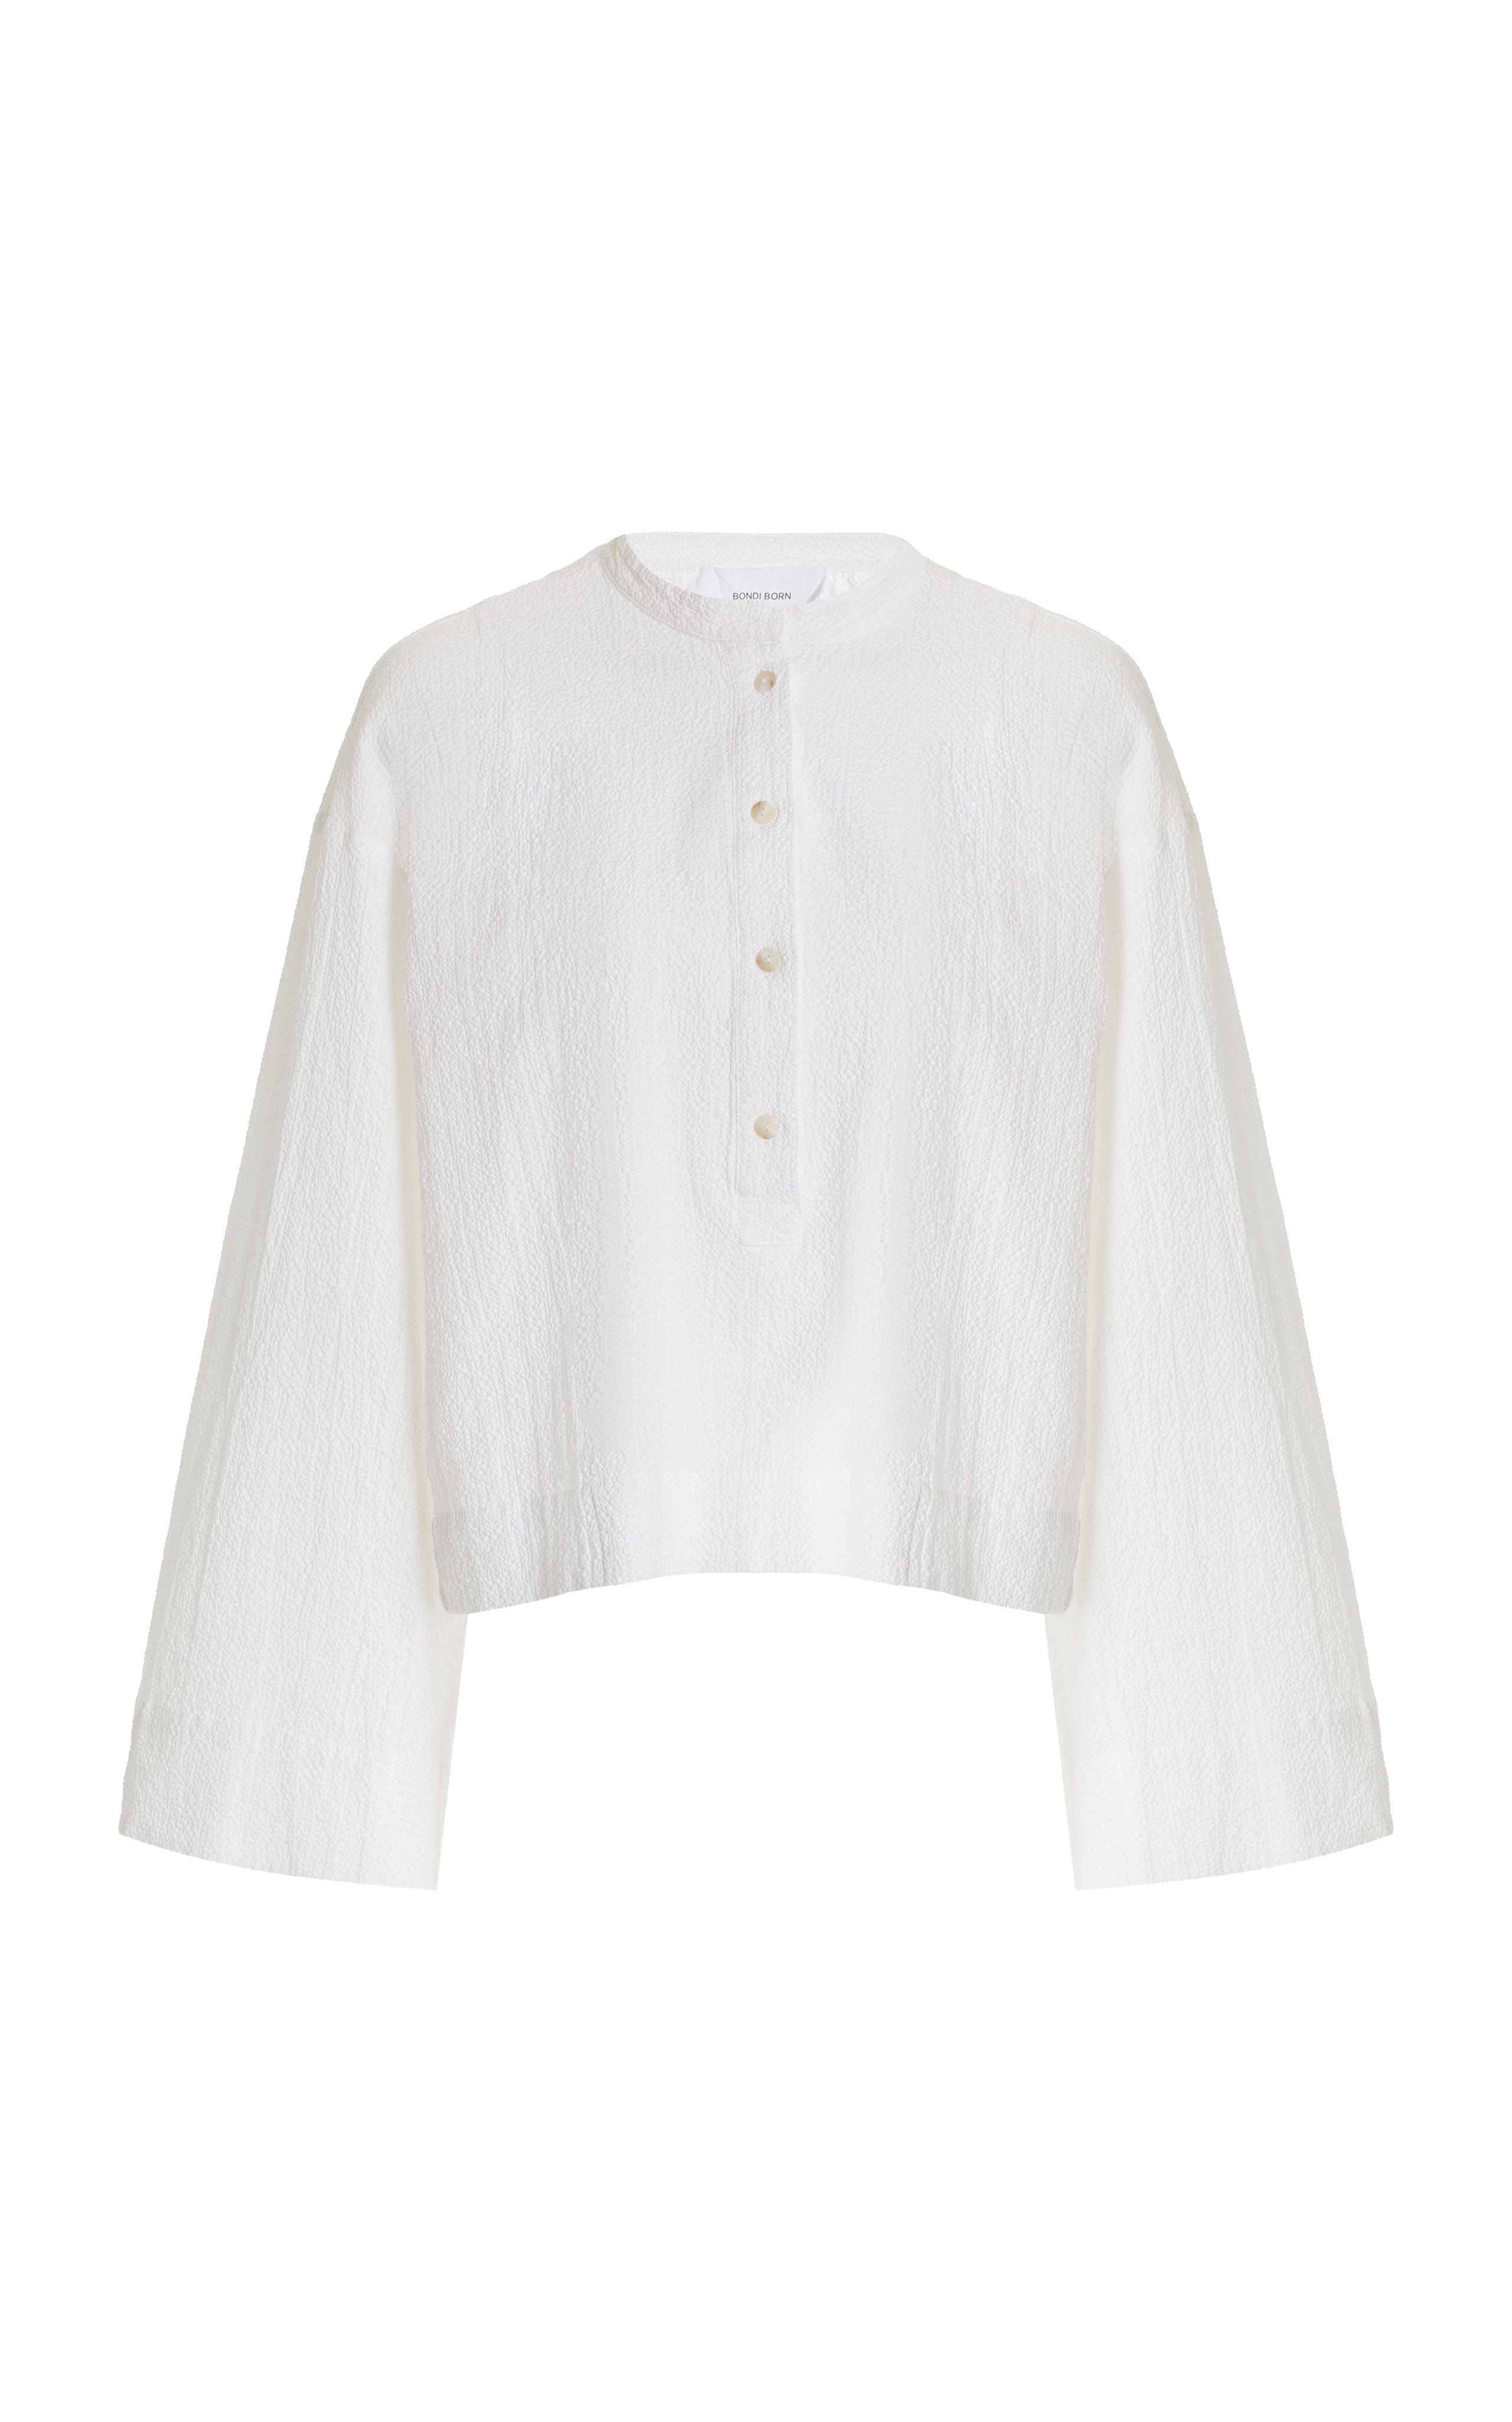 Hastings Cropped Organic Cotton Tunic Top | Moda Operandi (Global)